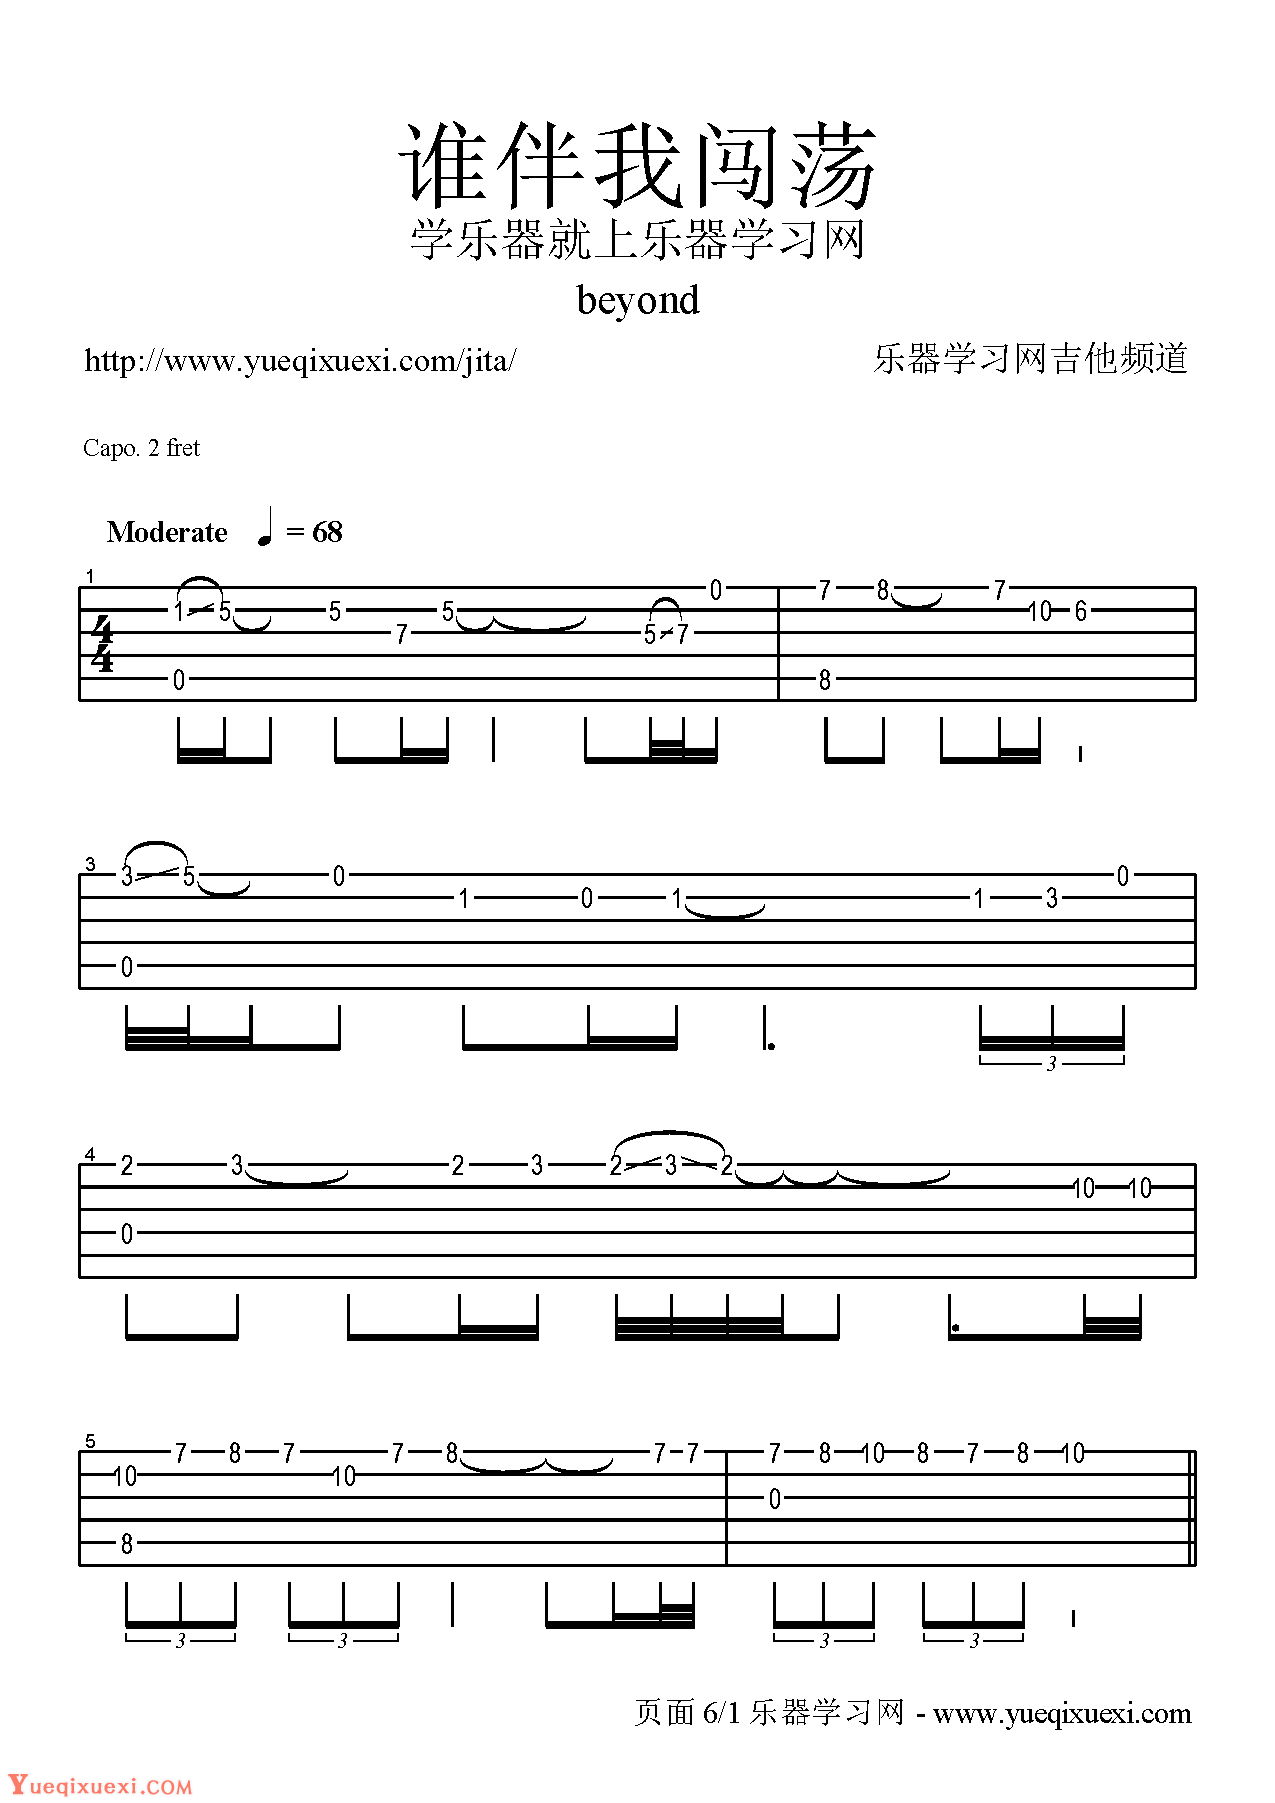 Beyond吉他谱【海阔天空】现场版 SOLO 电吉他谱-电吉他曲谱 - 乐器学习网